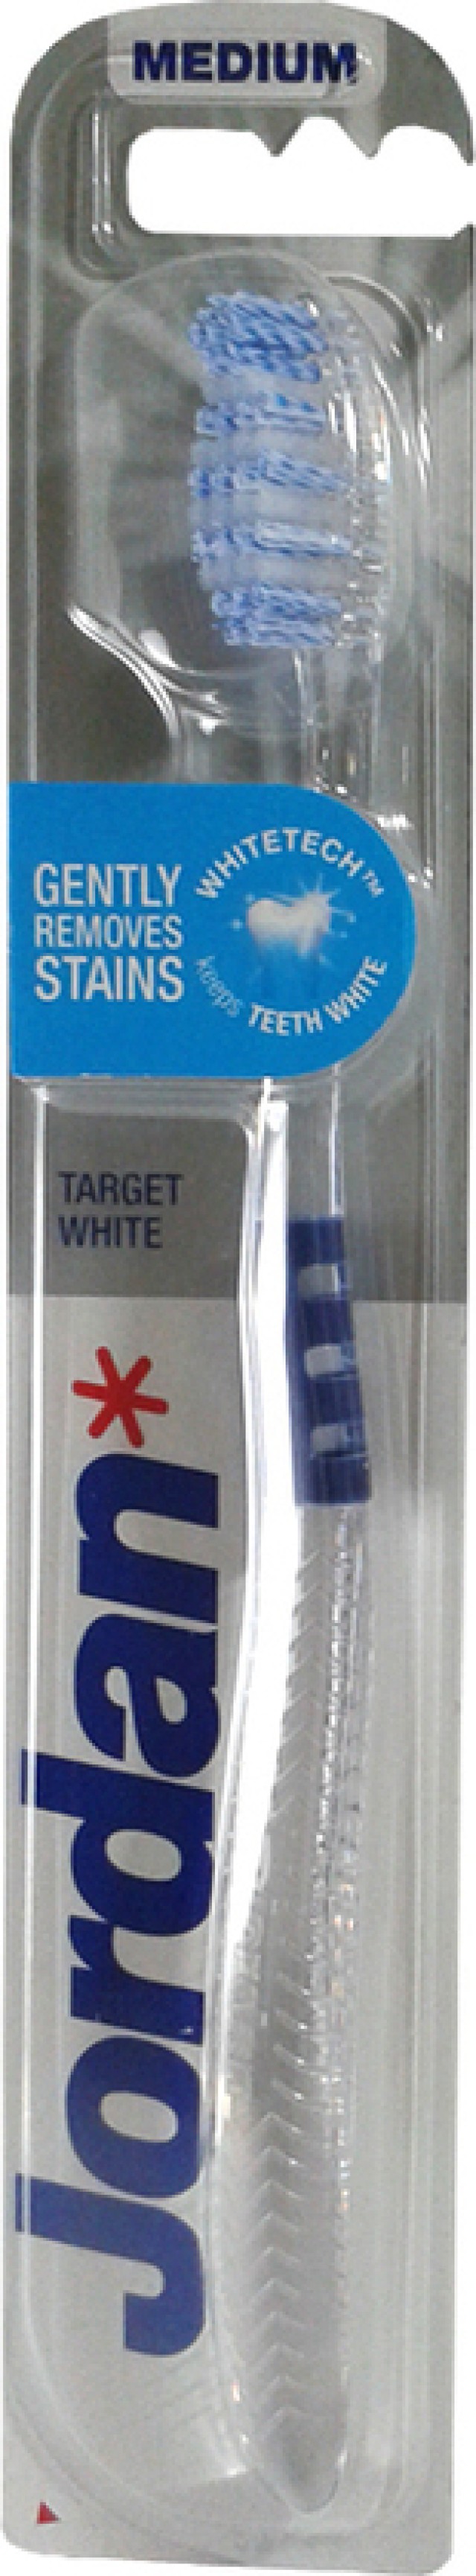 JORDAN Target White Οδοντόβουρτσα Medium Σκούρο Μπλε, 1τμχ.